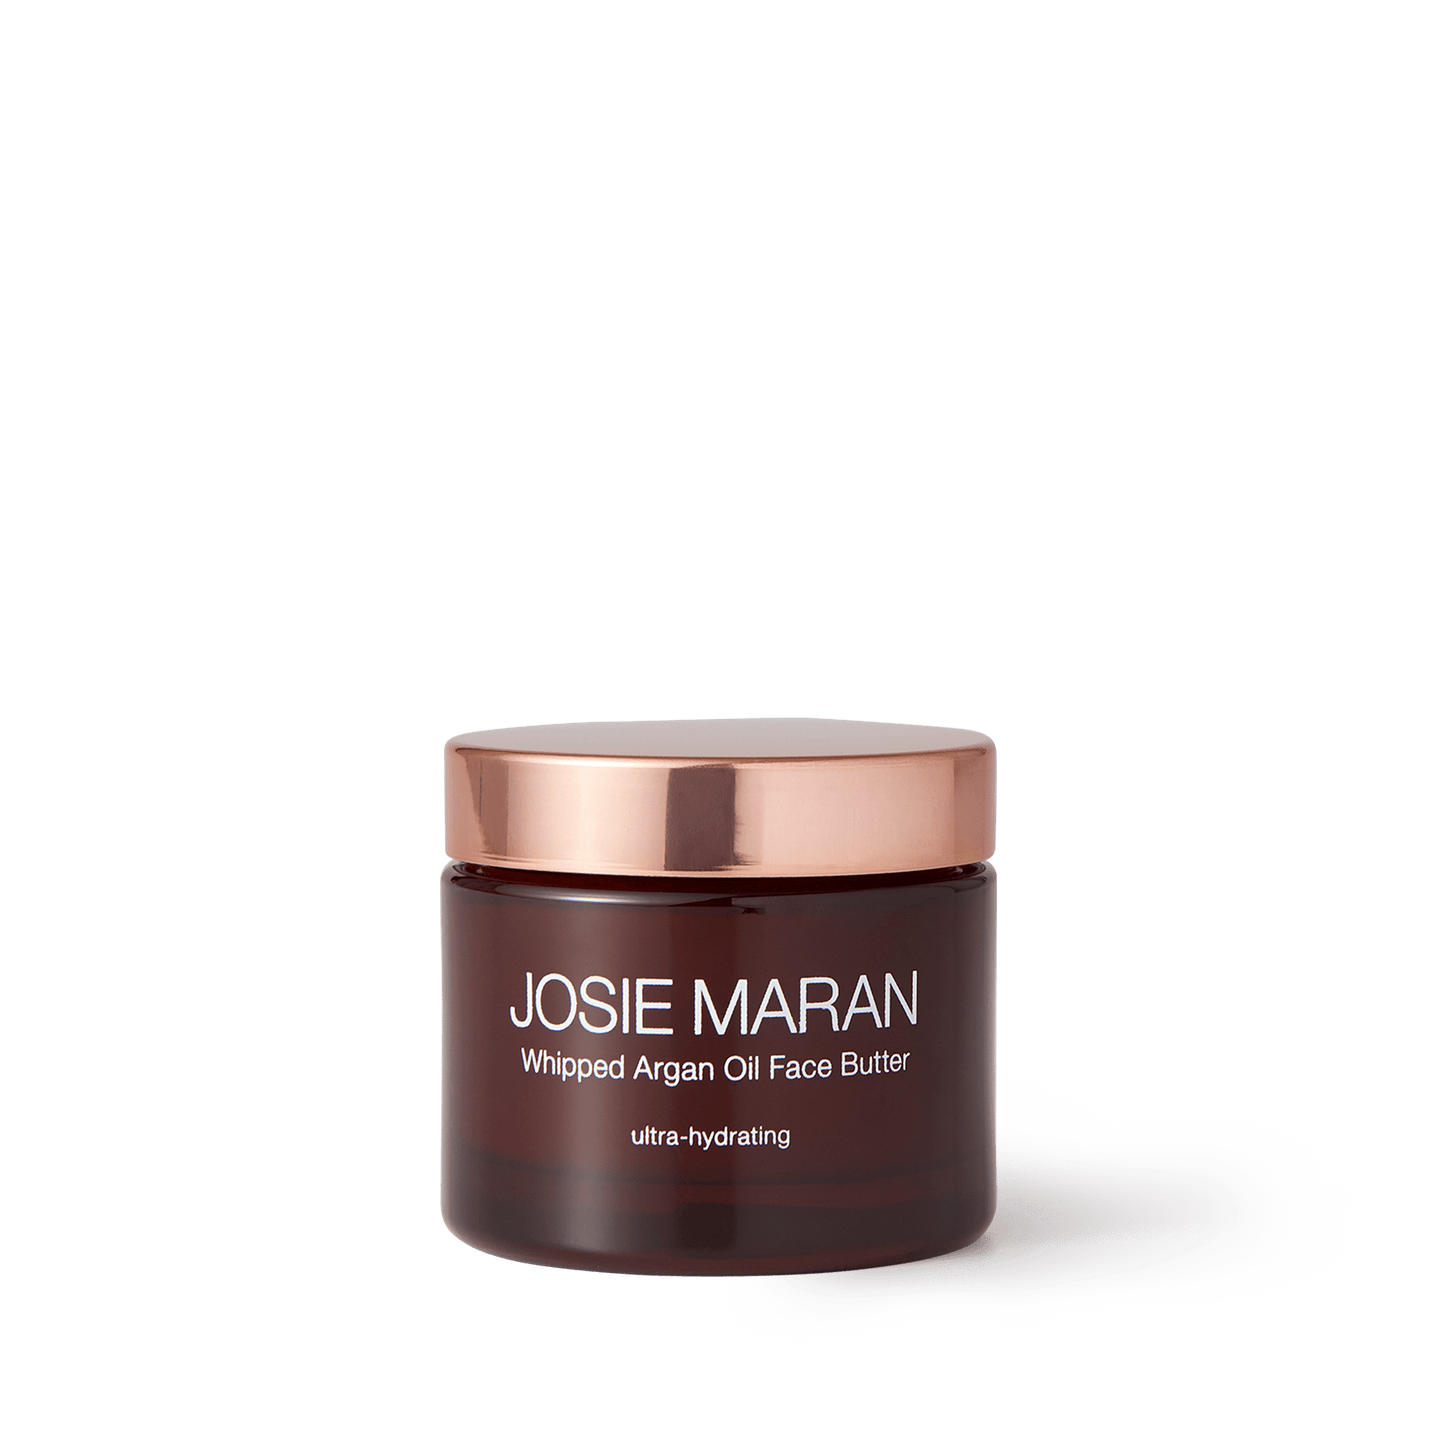 Josie Maran Whipped Argan Oil Face Butter - 